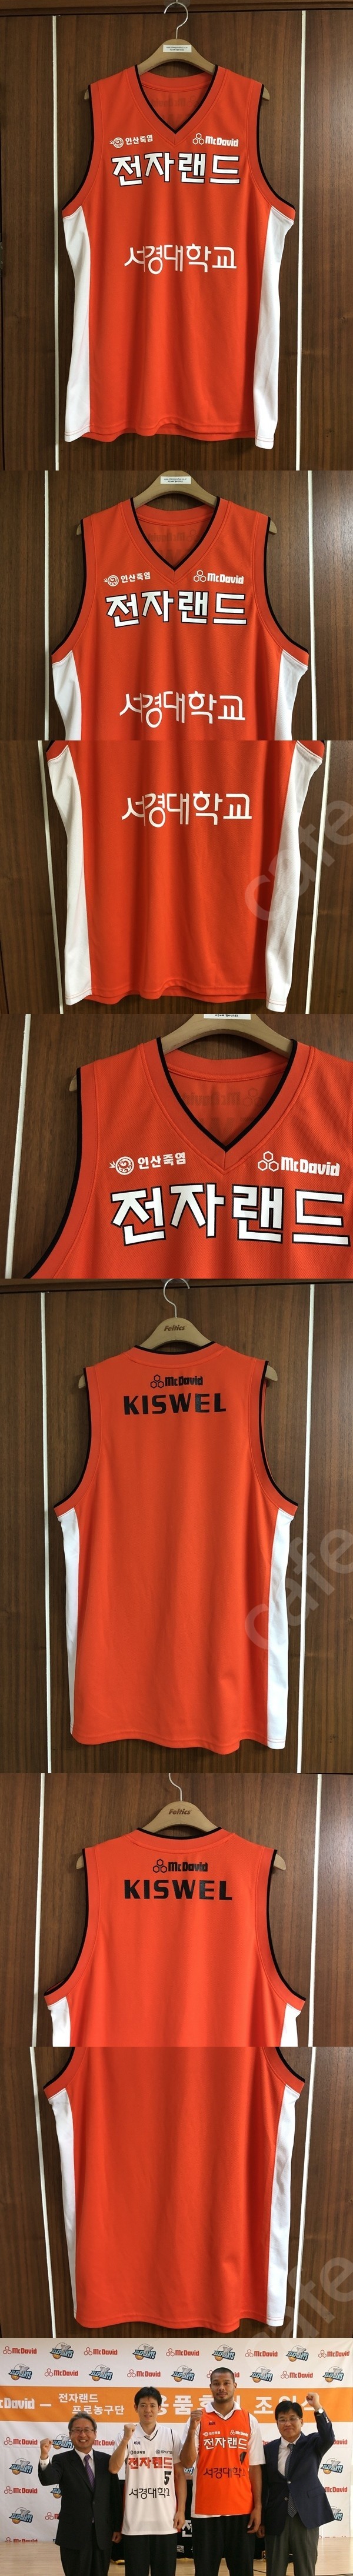 KBL 맥데이비드(비바스포츠) 인천전자랜드 엘리펀츠 유니폼/져지 XL/모자